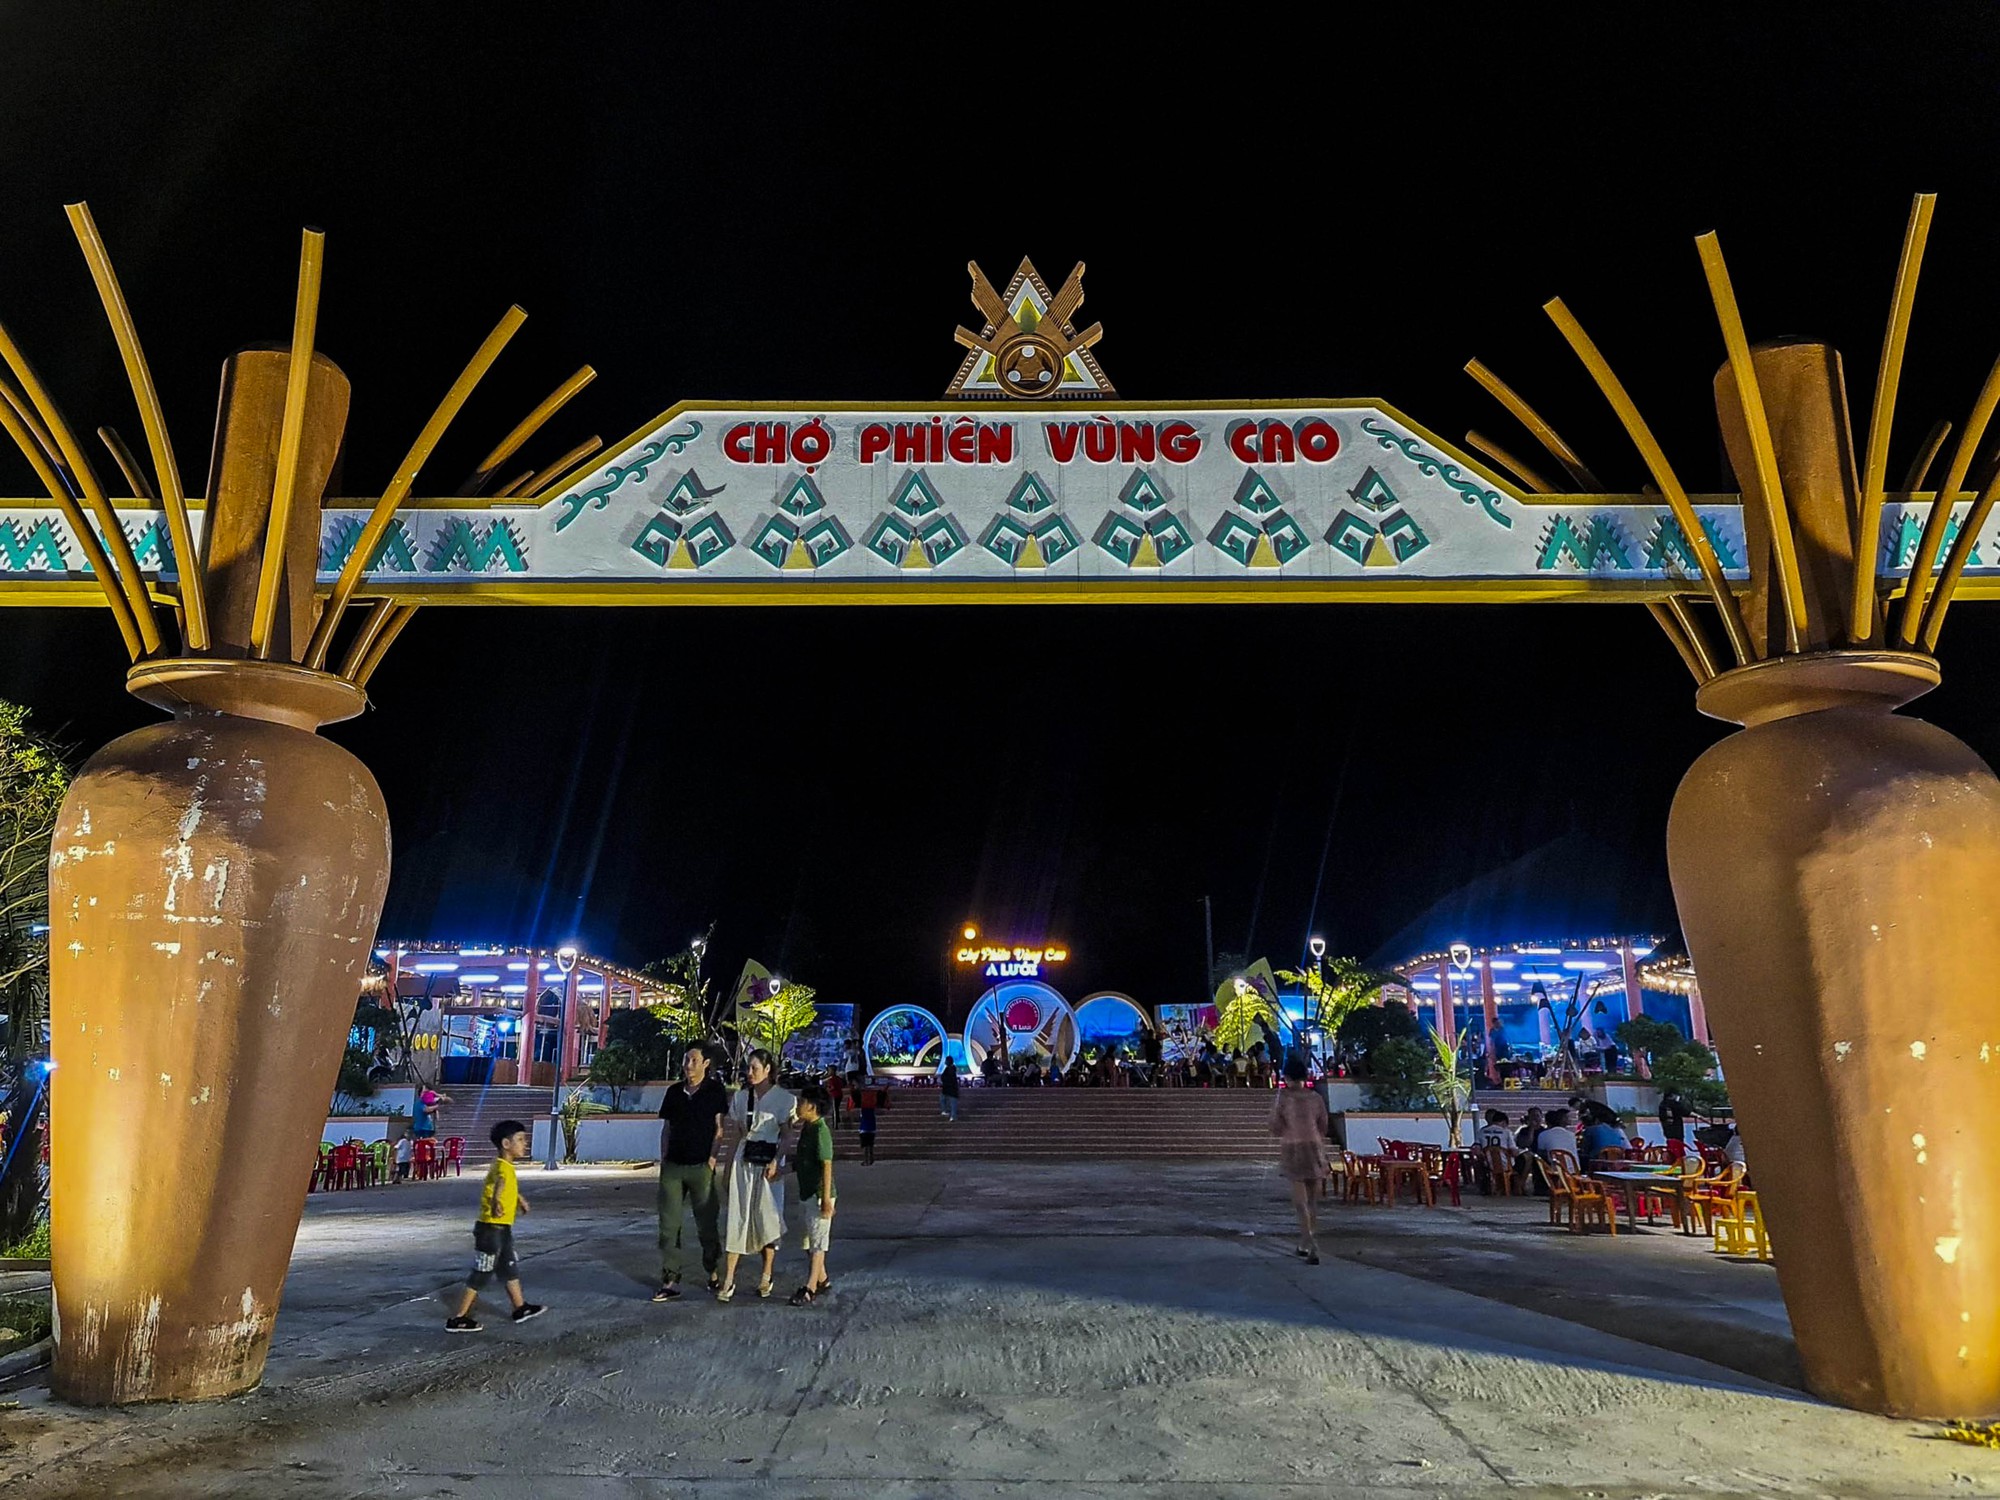 Miền sơn cước phía Tây tỉnh Thừa Thiên Huế, điểm đến cho những du khách thích sự khám phá - Ảnh 9.